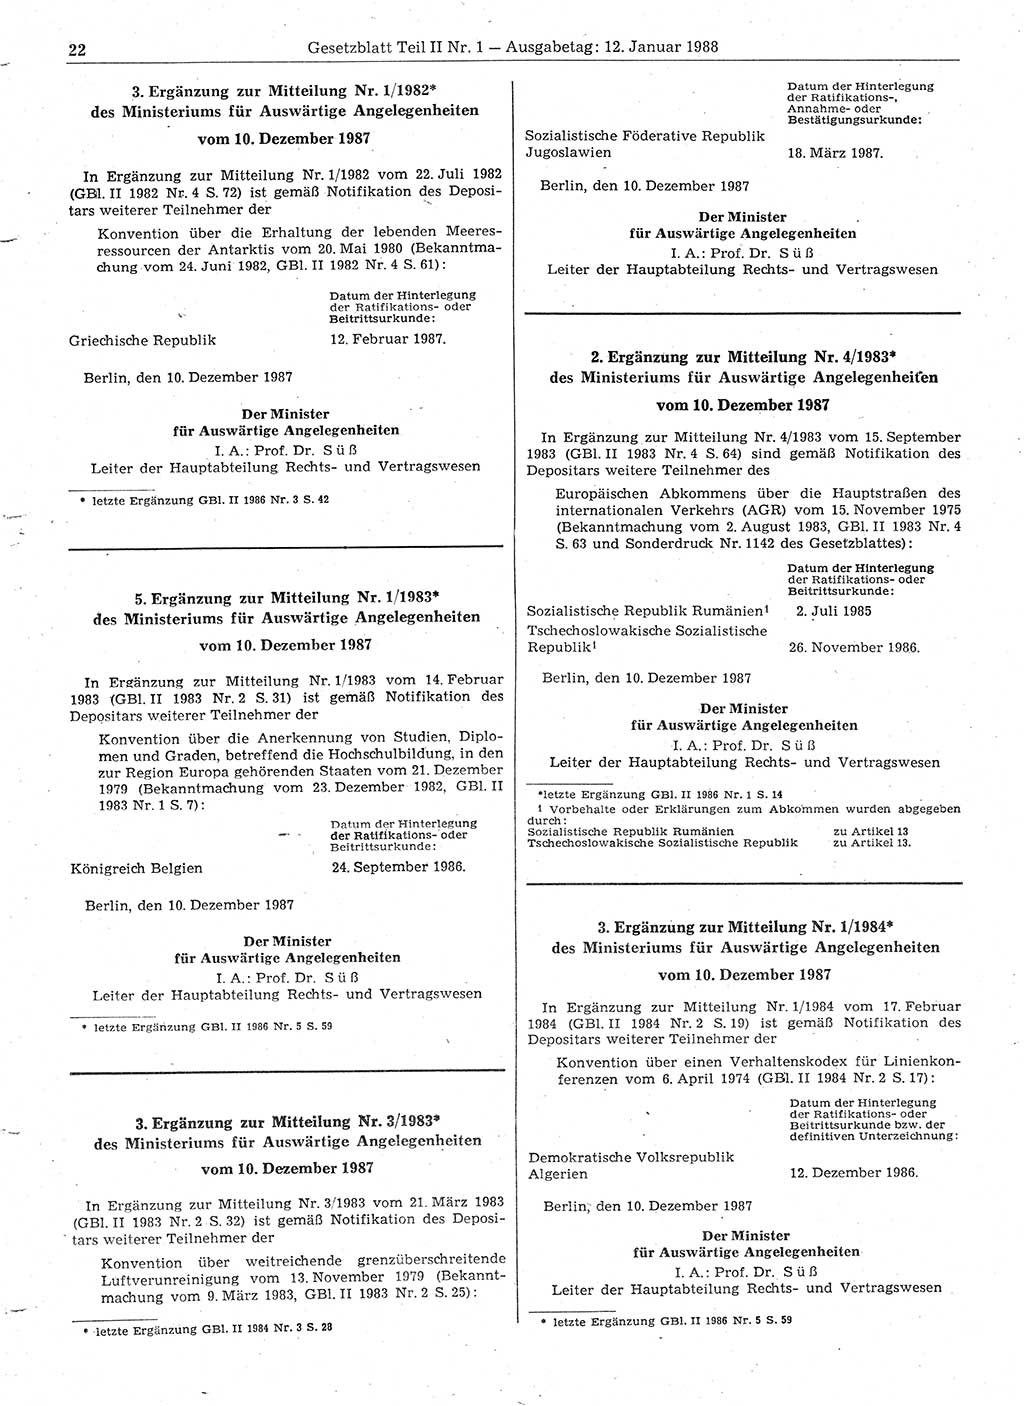 Gesetzblatt (GBl.) der Deutschen Demokratischen Republik (DDR) Teil ⅠⅠ 1988, Seite 22 (GBl. DDR ⅠⅠ 1988, S. 22)